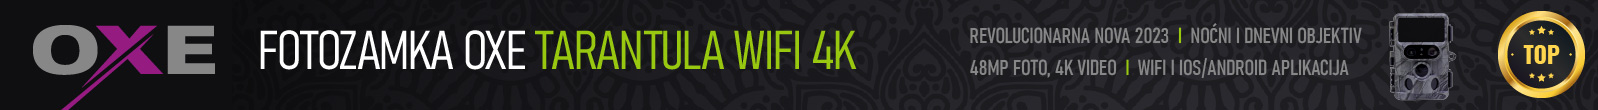 Fotozamka OXE Tarantula WiFi 4K